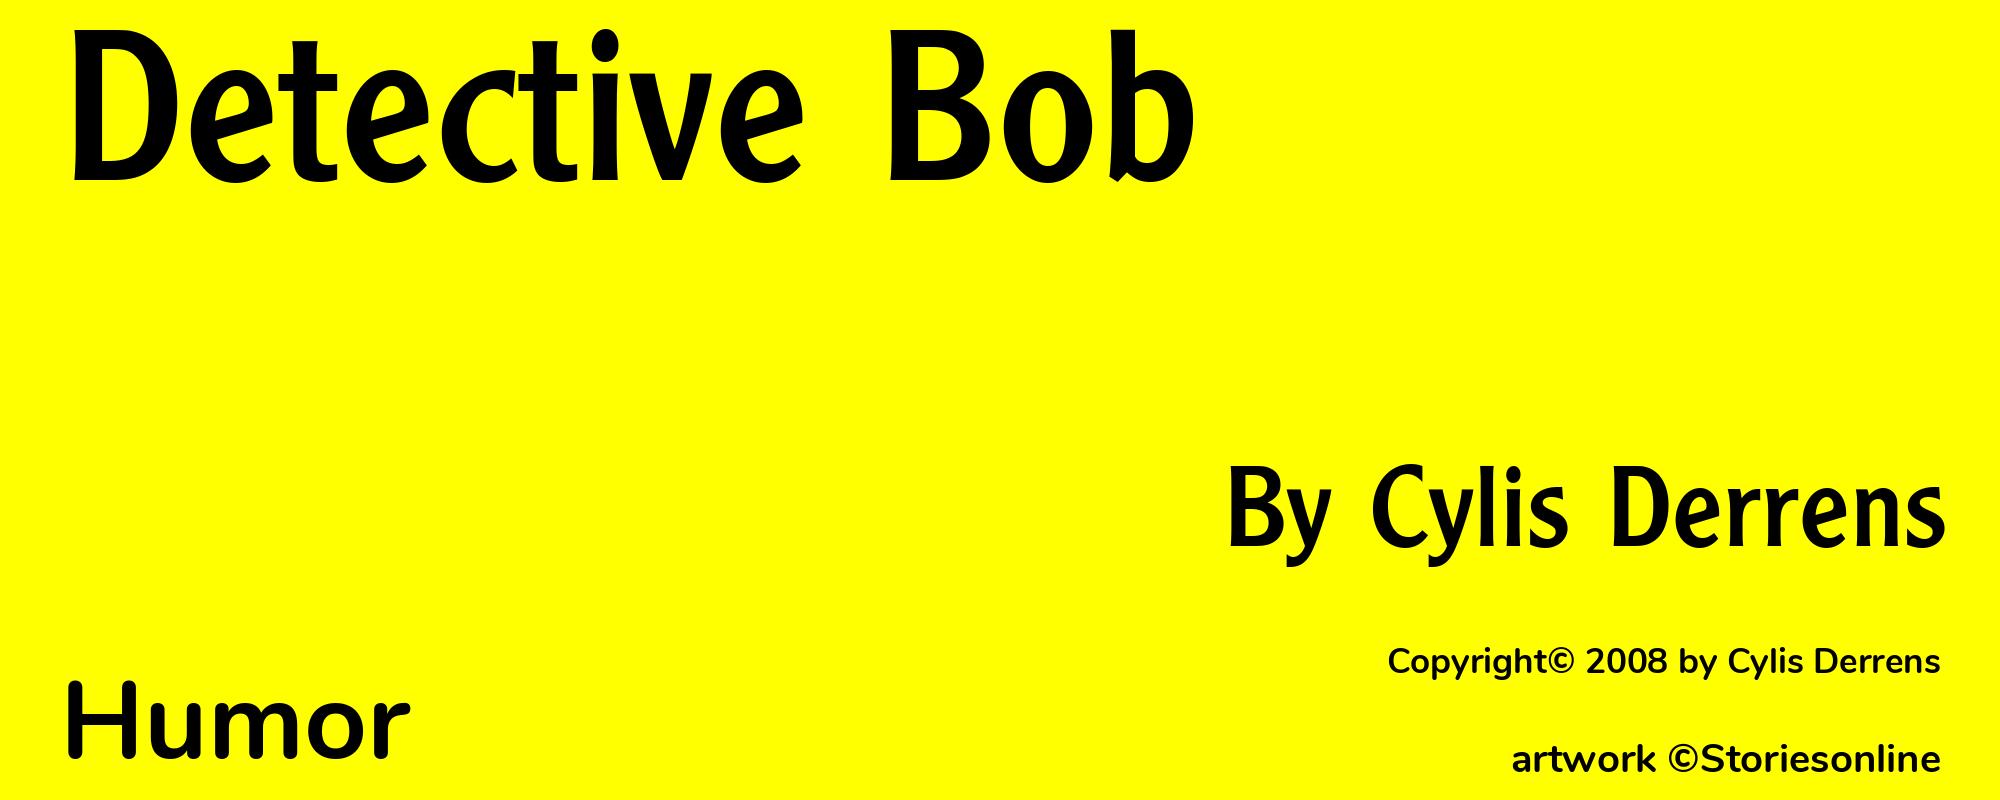 Detective Bob - Cover